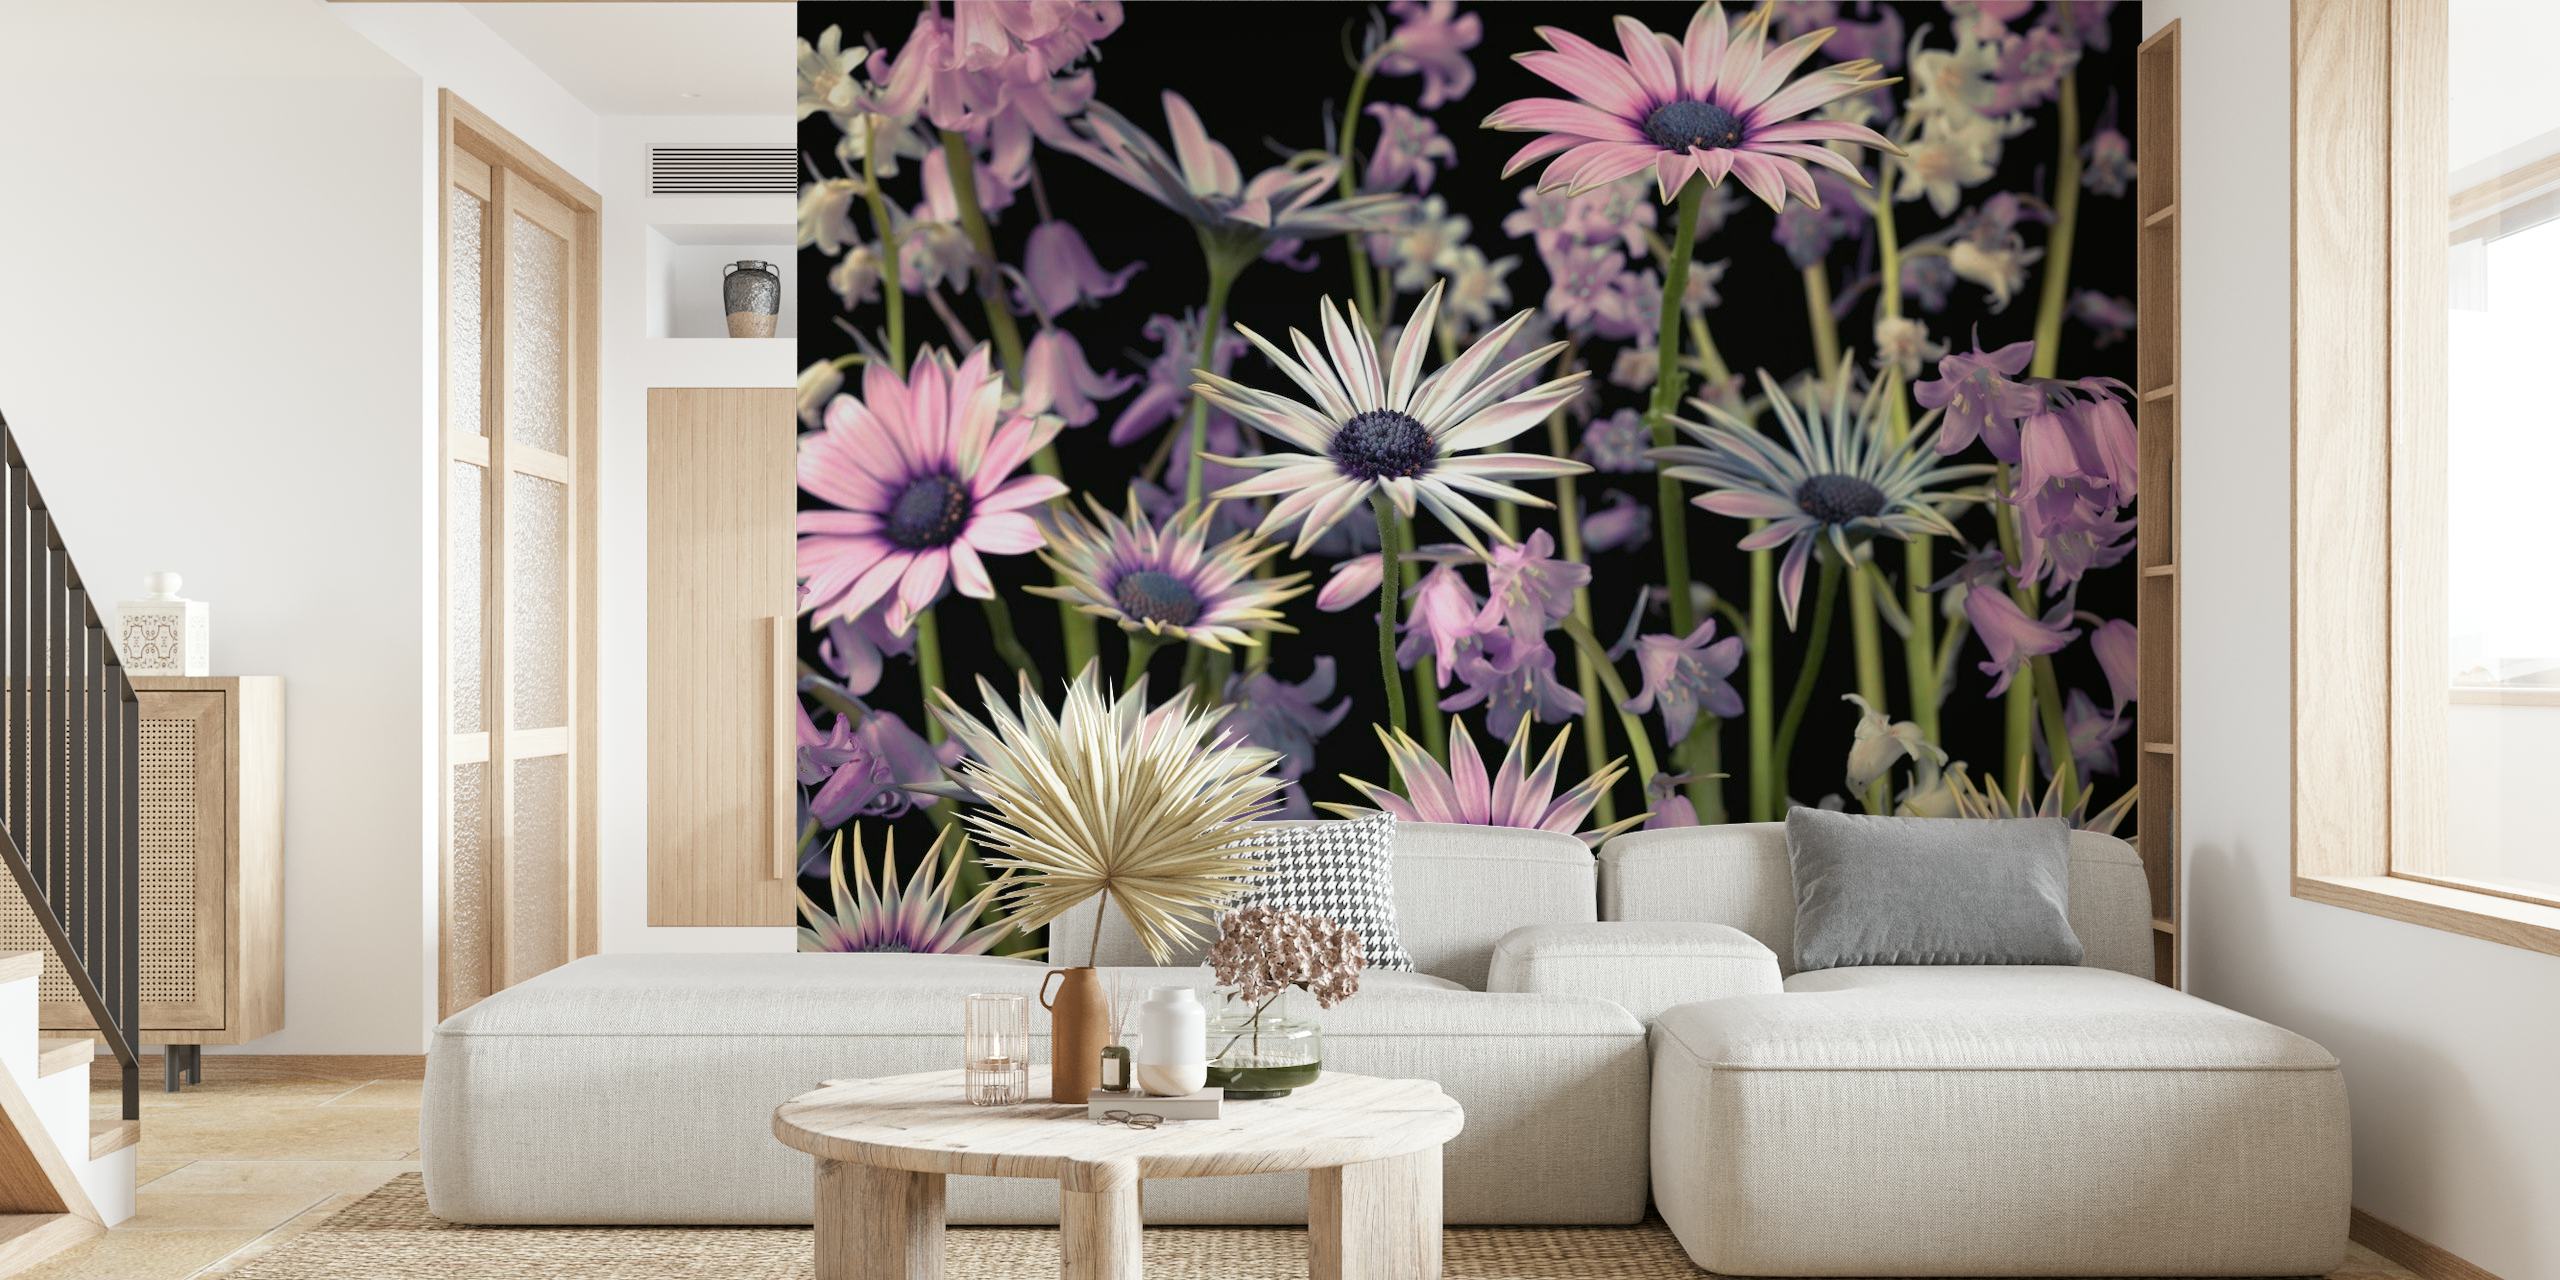 Niittykukkien seinämaalaus, jossa vaaleanpunaisia ja violetteja luonnonkukkia tummaa taustaa vasten